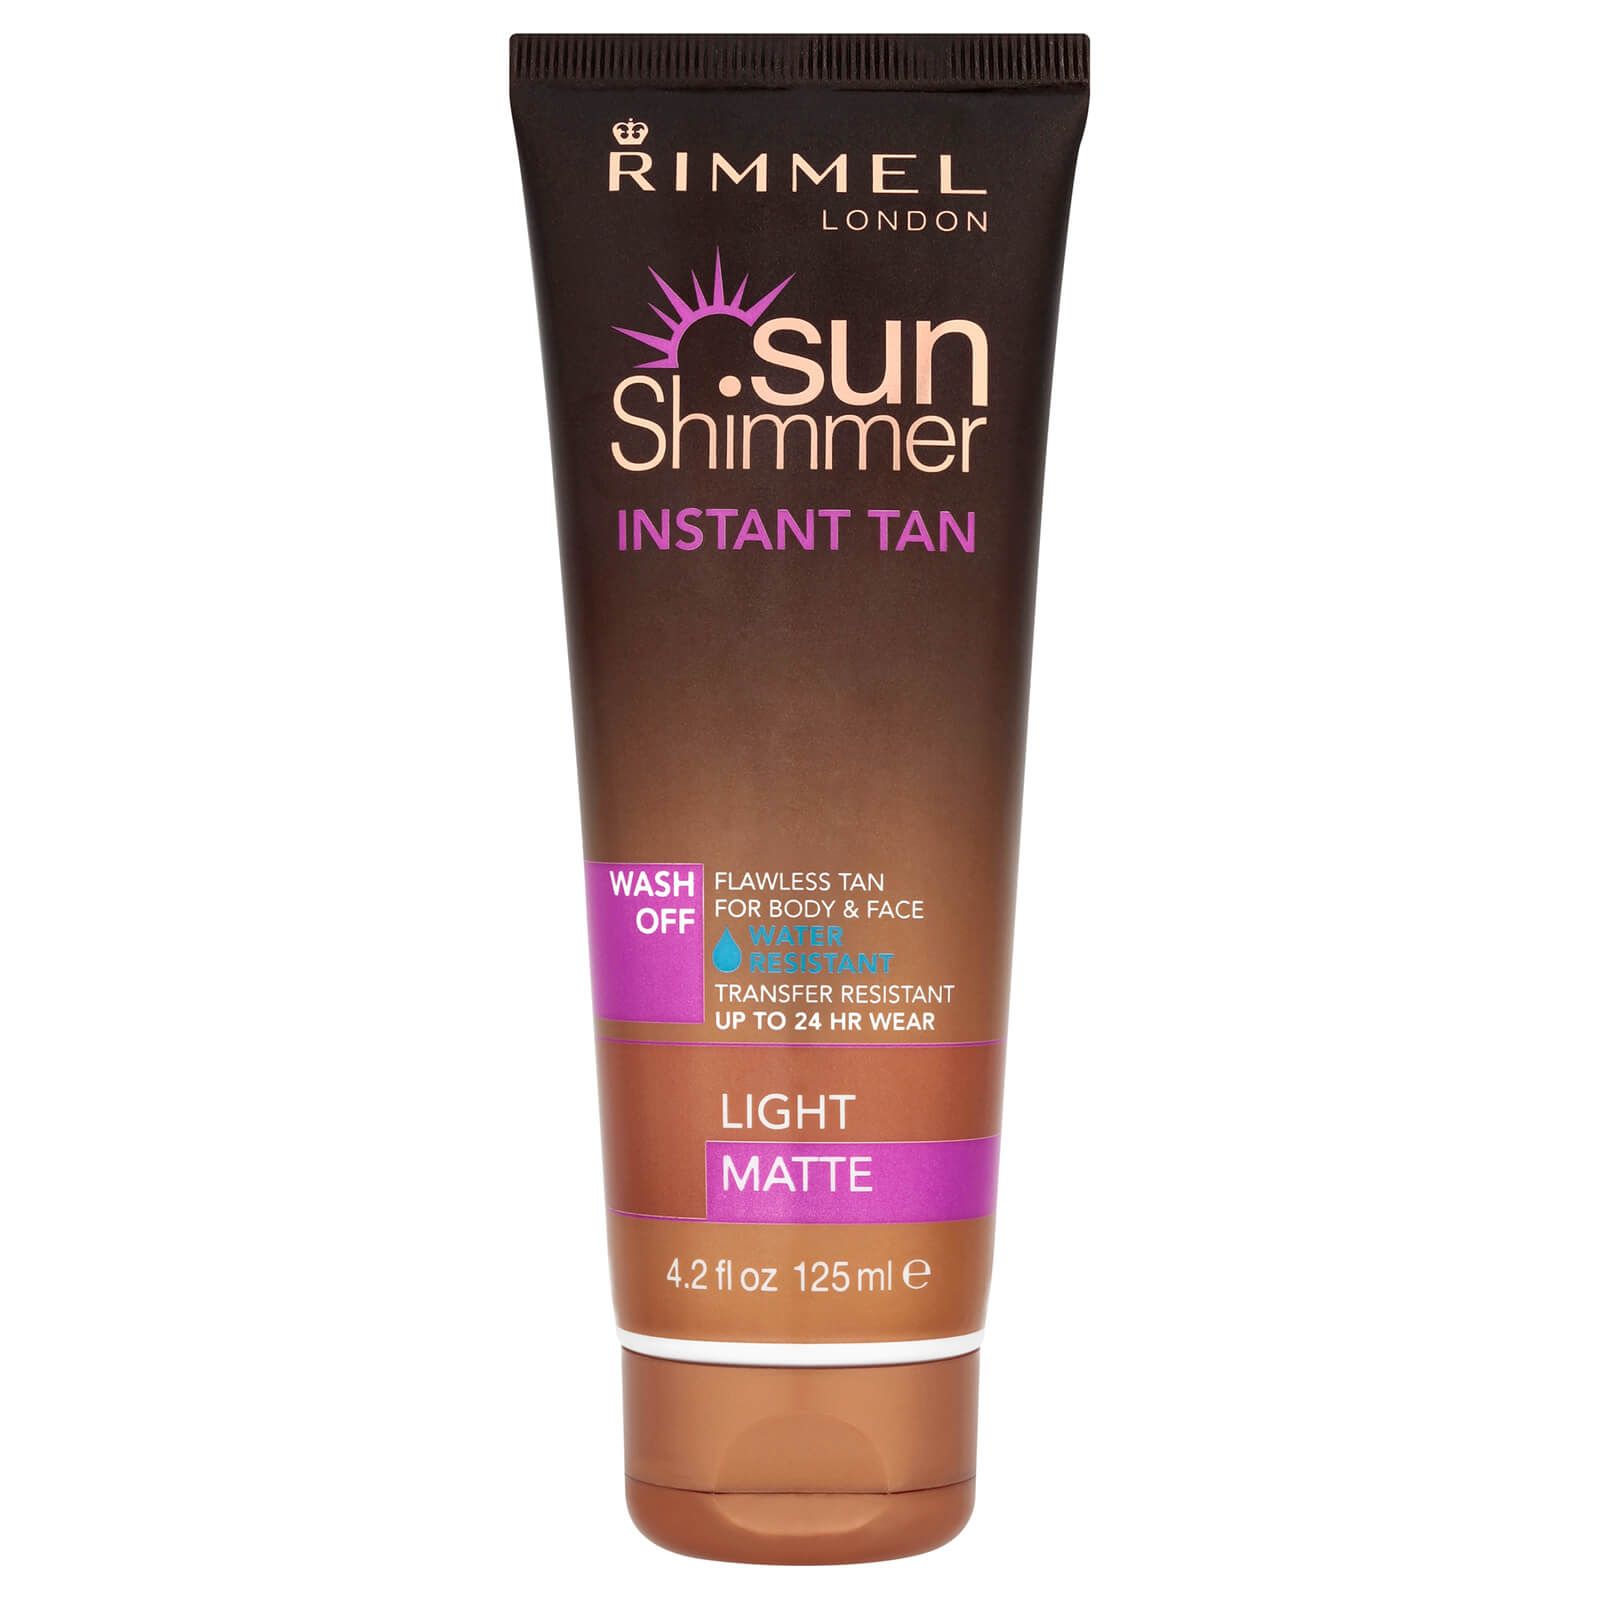 Rimmel Sunshimmer Water Resistant Wash Off Instant Tan - Matte (125ml)